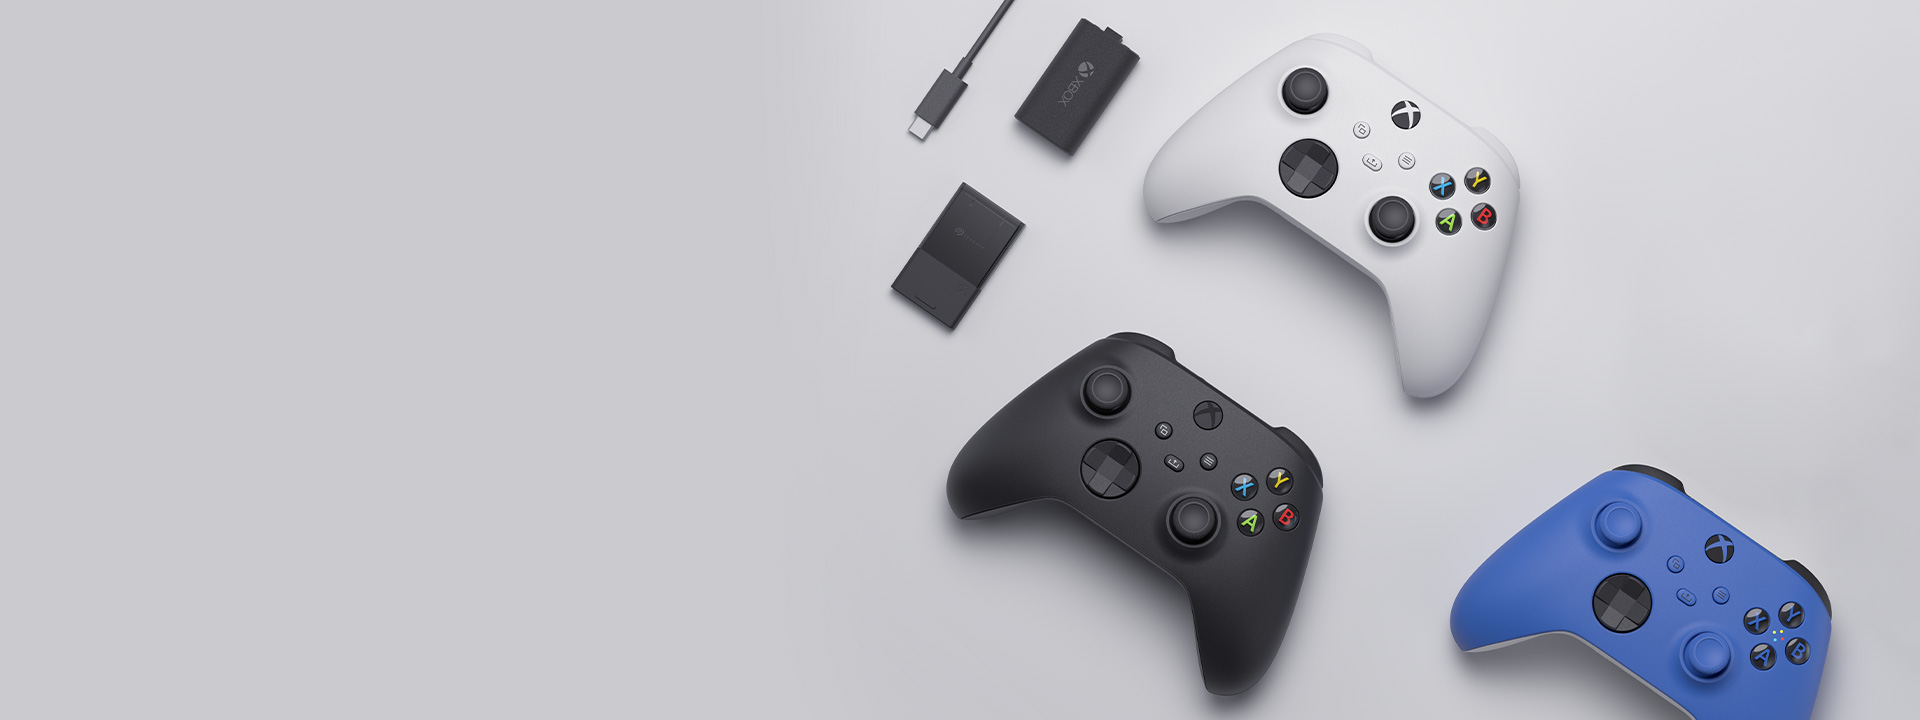 Varios accesorios de Xbox, incluyendo el control inalámbrico Xbox, el kit Play and Charge y la tarjeta de expansión de almacenamiento Seagate para Xbox Series X|S, aparecen colocados unos junto a otros.